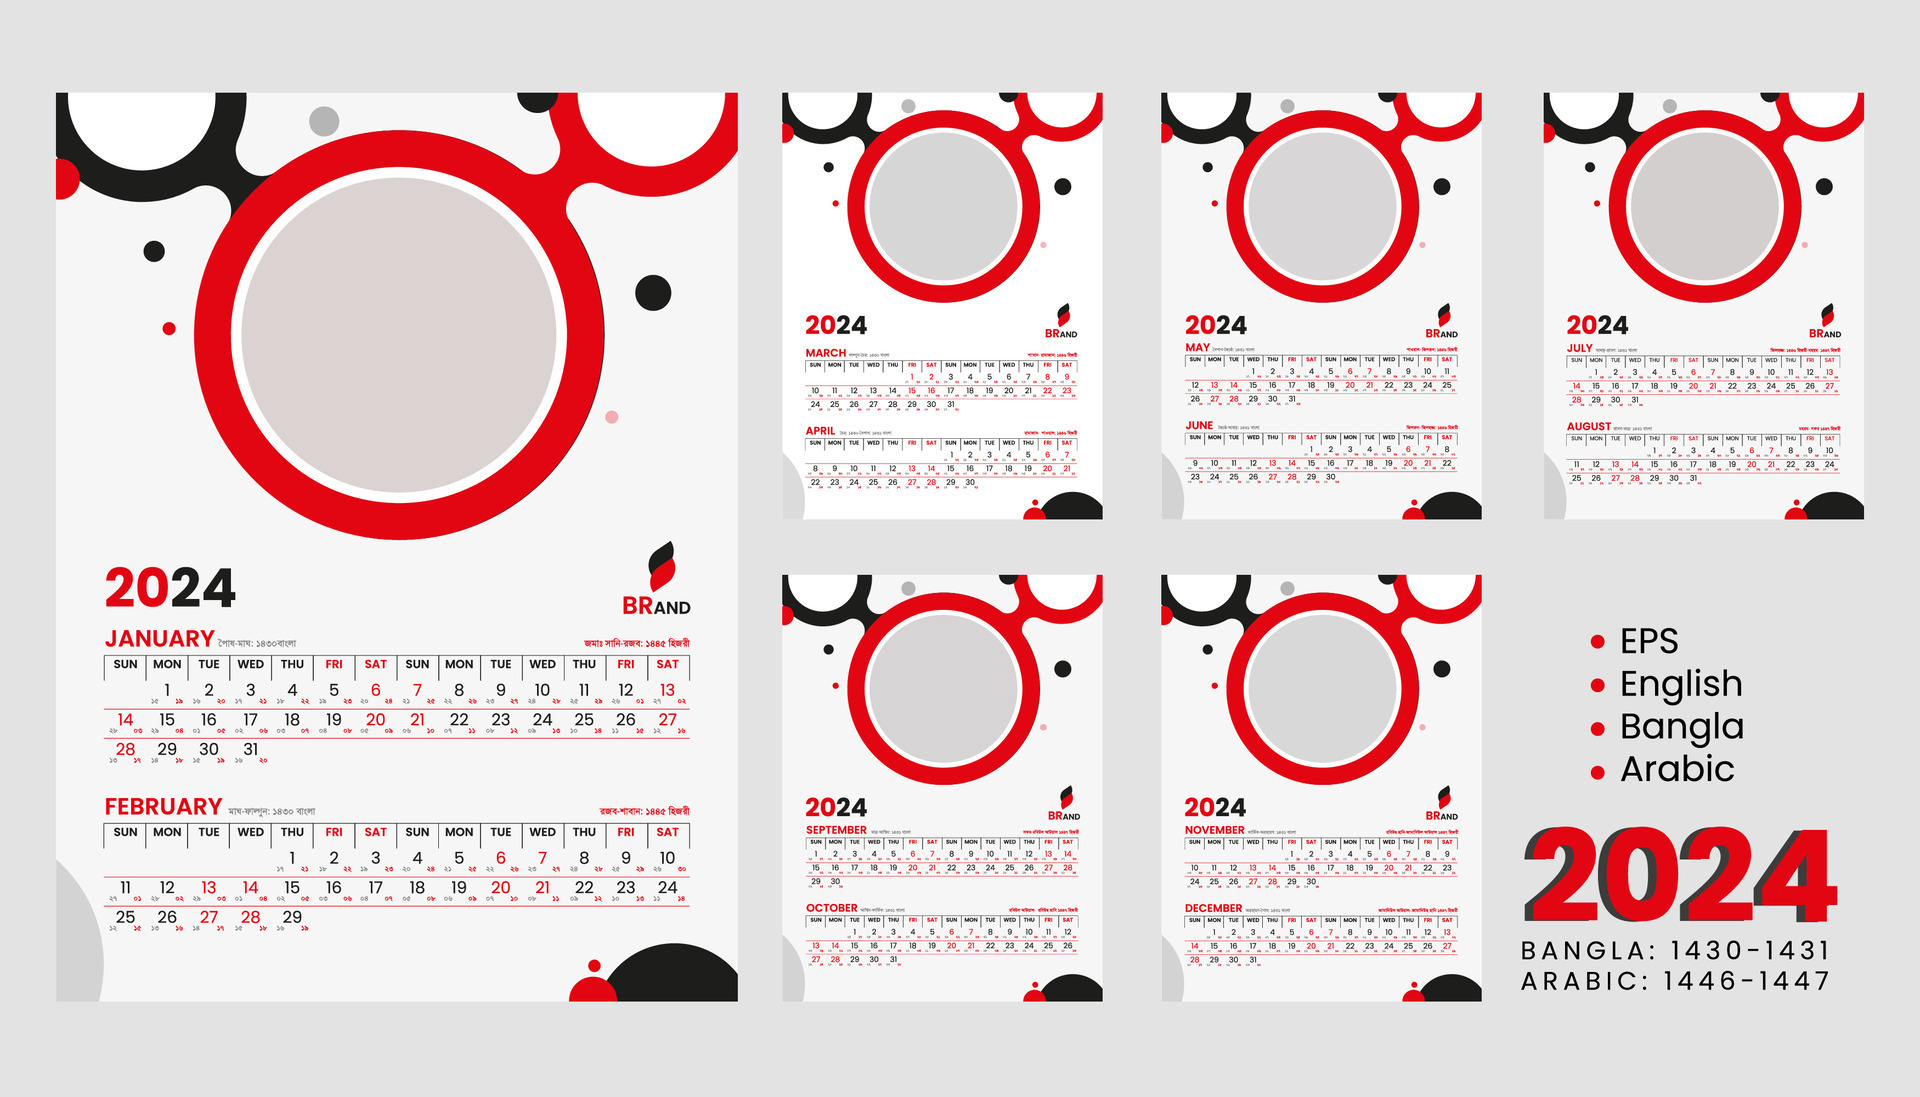 Bangla English Arabic Calendar 2024 Dec 2024 Calendar With Holidays